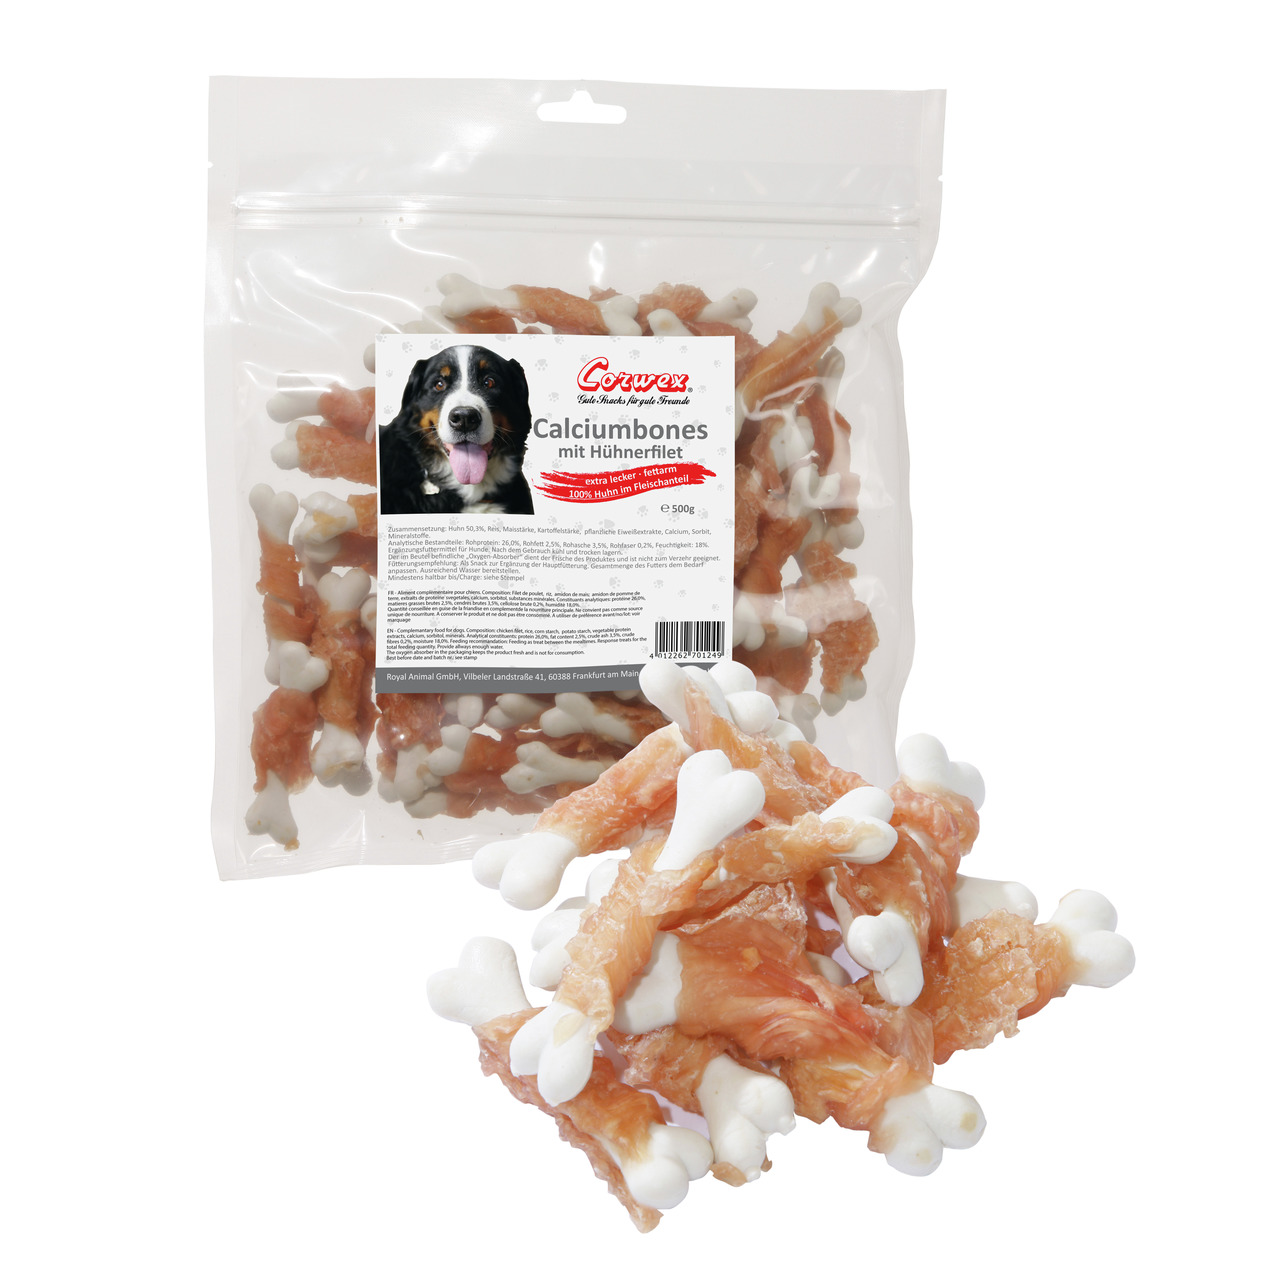 Corwex Calciumbones mit Hühnerfilet Hunde Snack 500 g